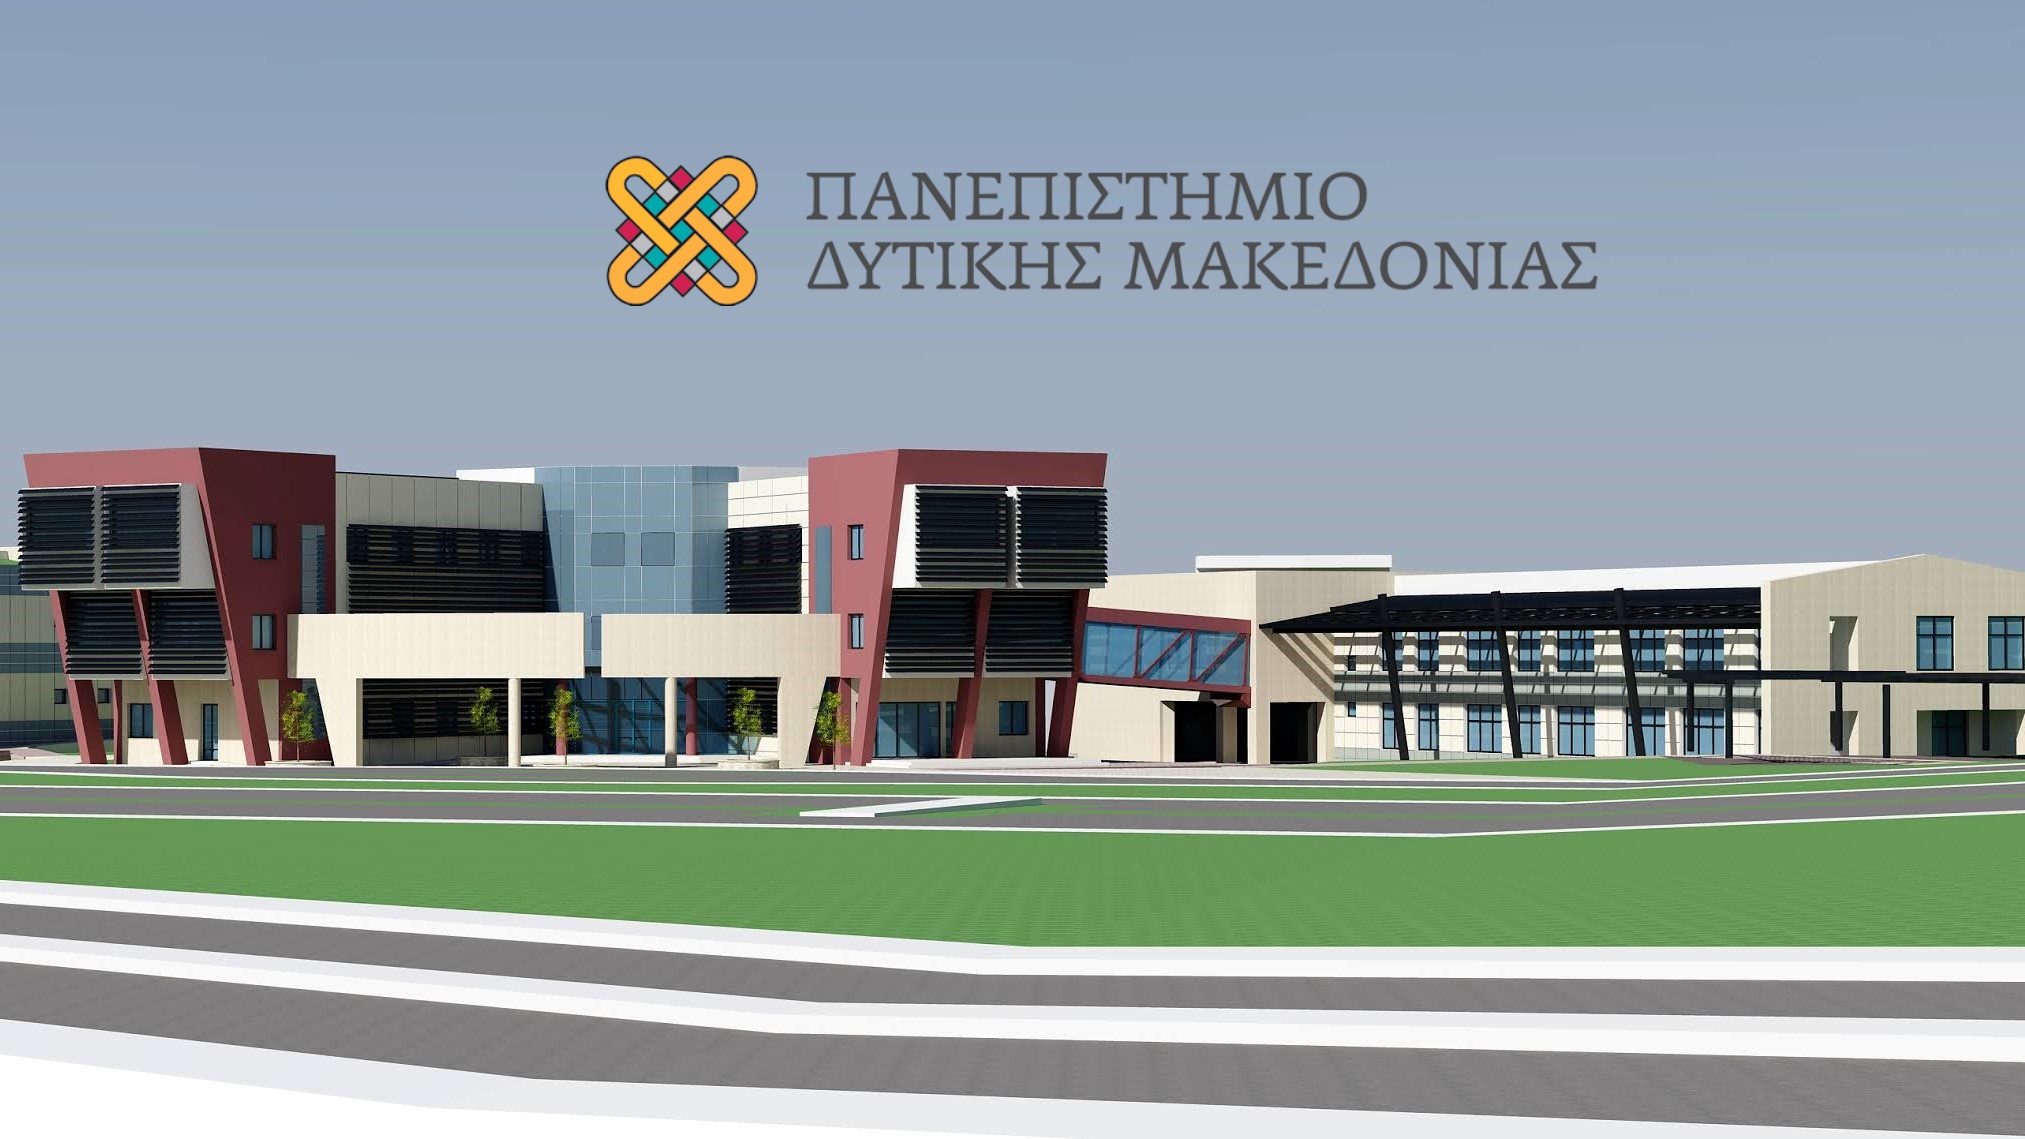 Δ. Μακεδονία: Διαδικτυακή ημερίδα «Θέματα Ψηφιακής Υγείας και Διοίκησης Υπηρεσιών Υγείας»